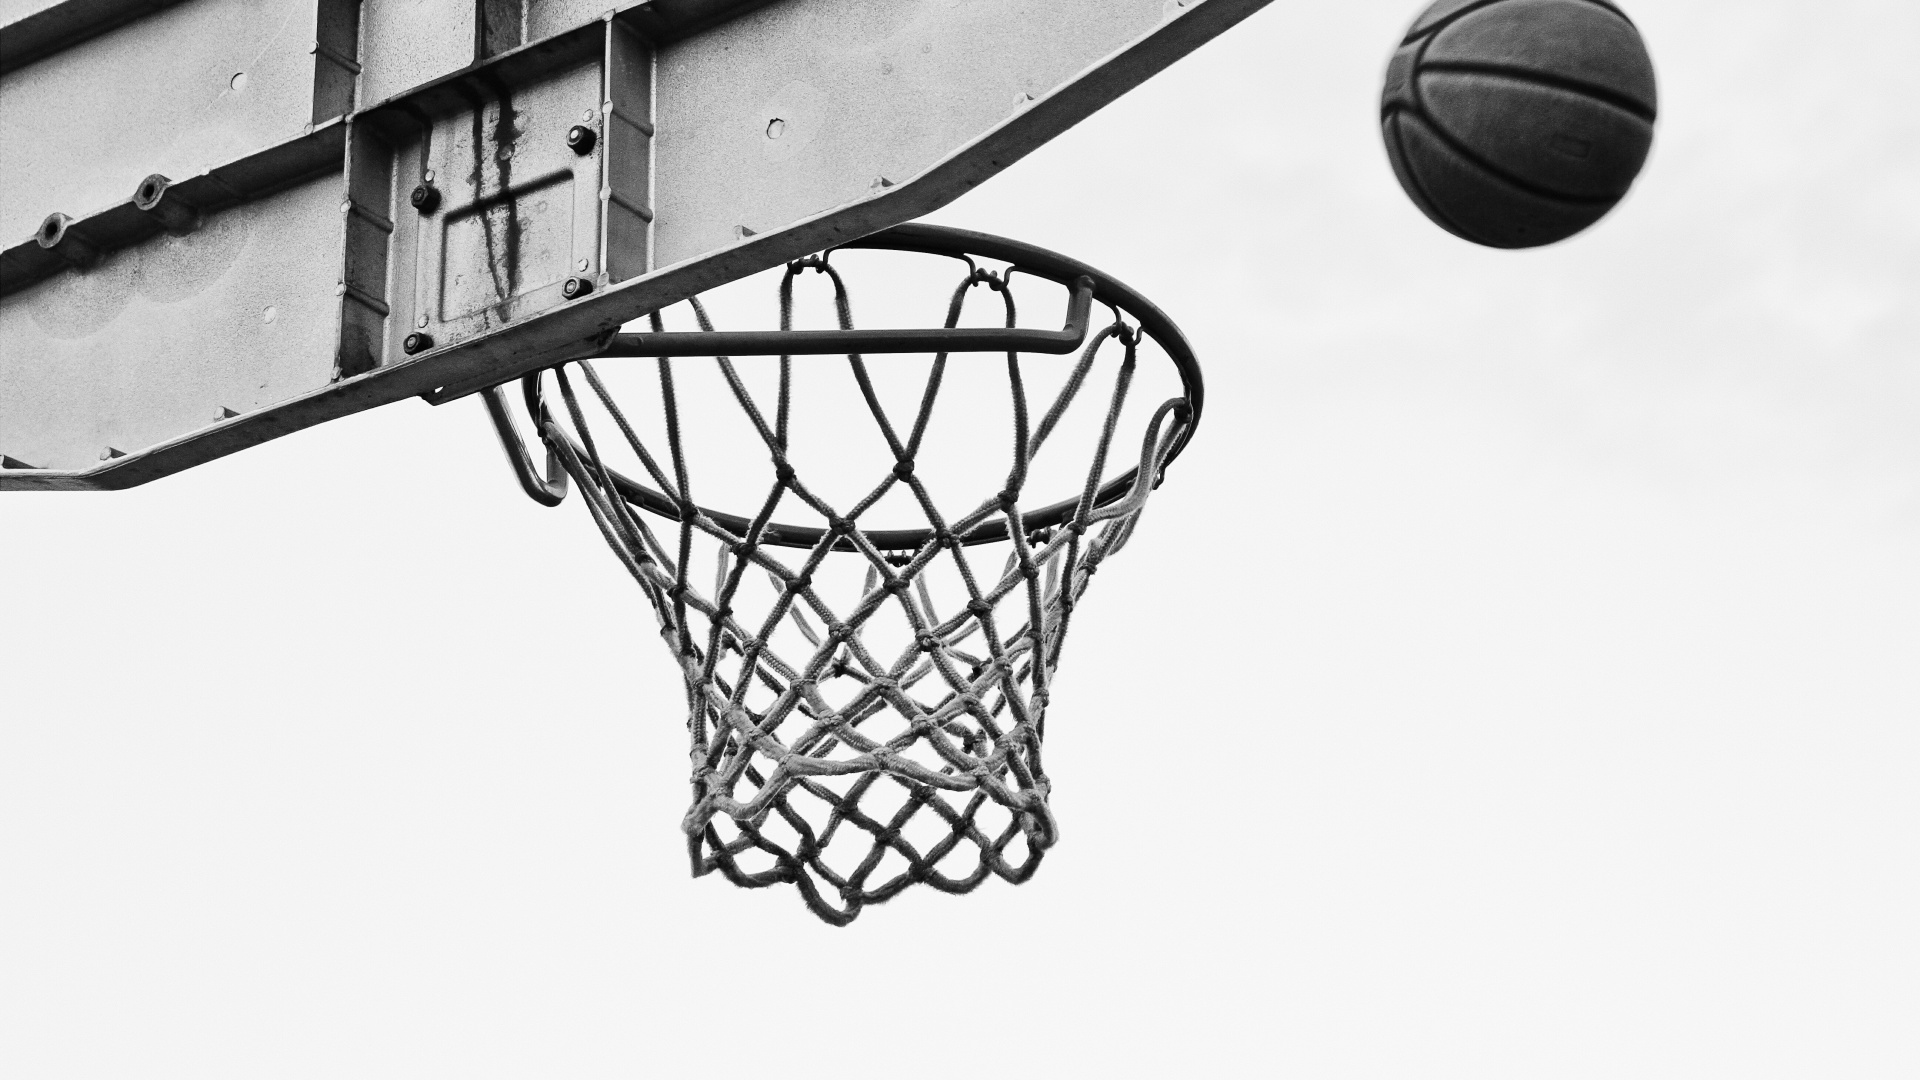 篮球, 篮板, 篮球场, 街头, 团队运动 壁纸 1920x1080 允许